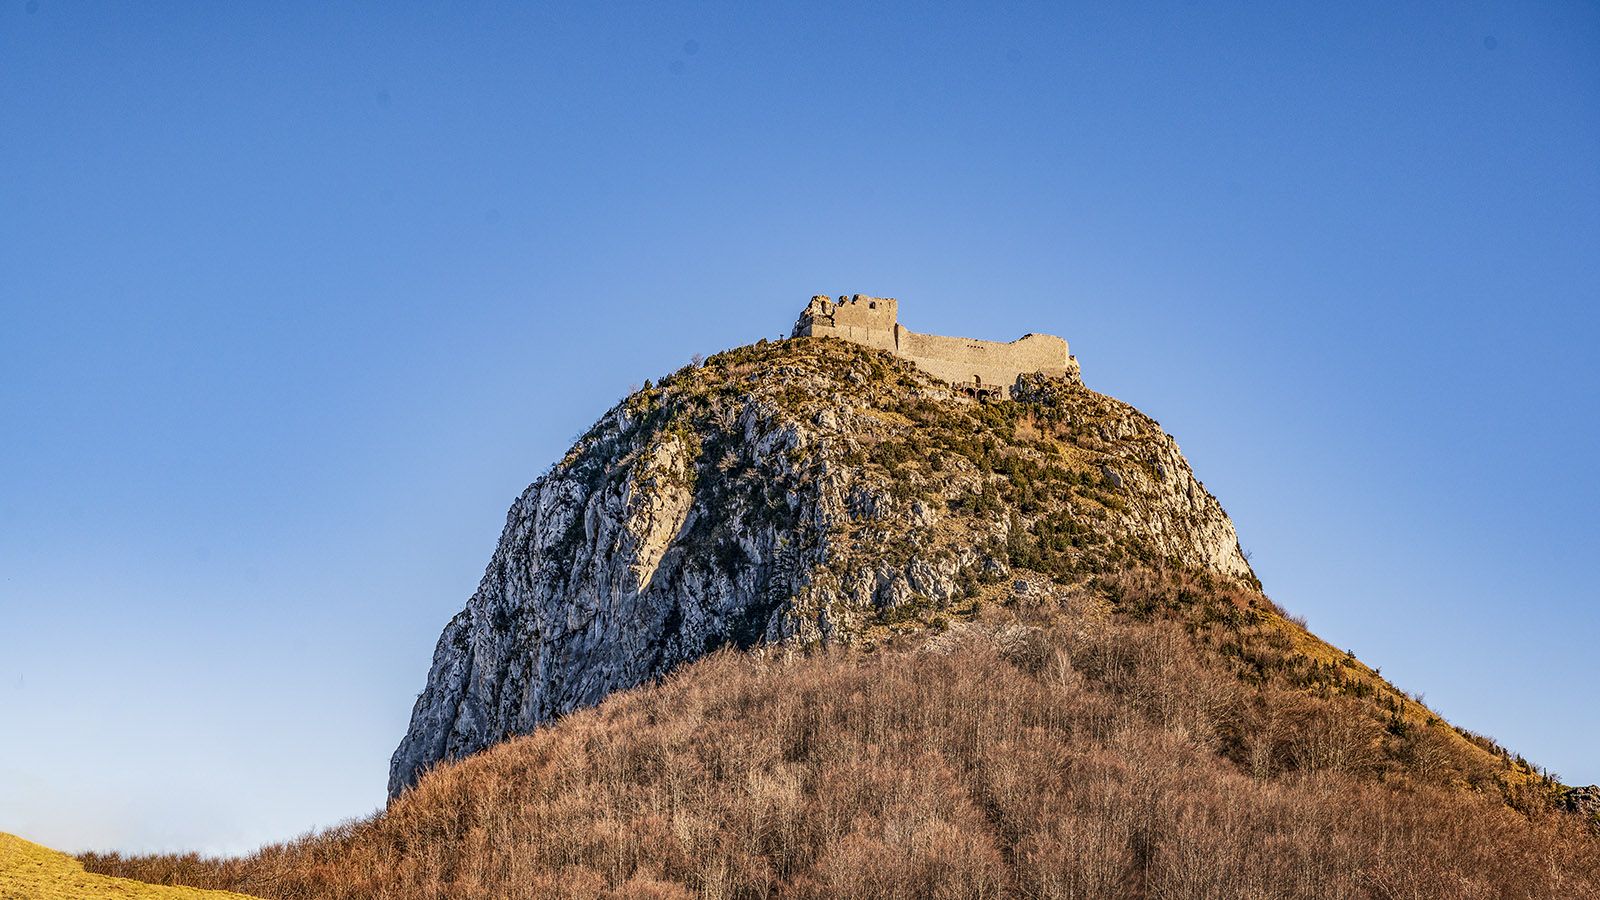 Glaubensfestung in schwindelnder Höhe: die Burg Montségur. Foto: Hilke Maunder